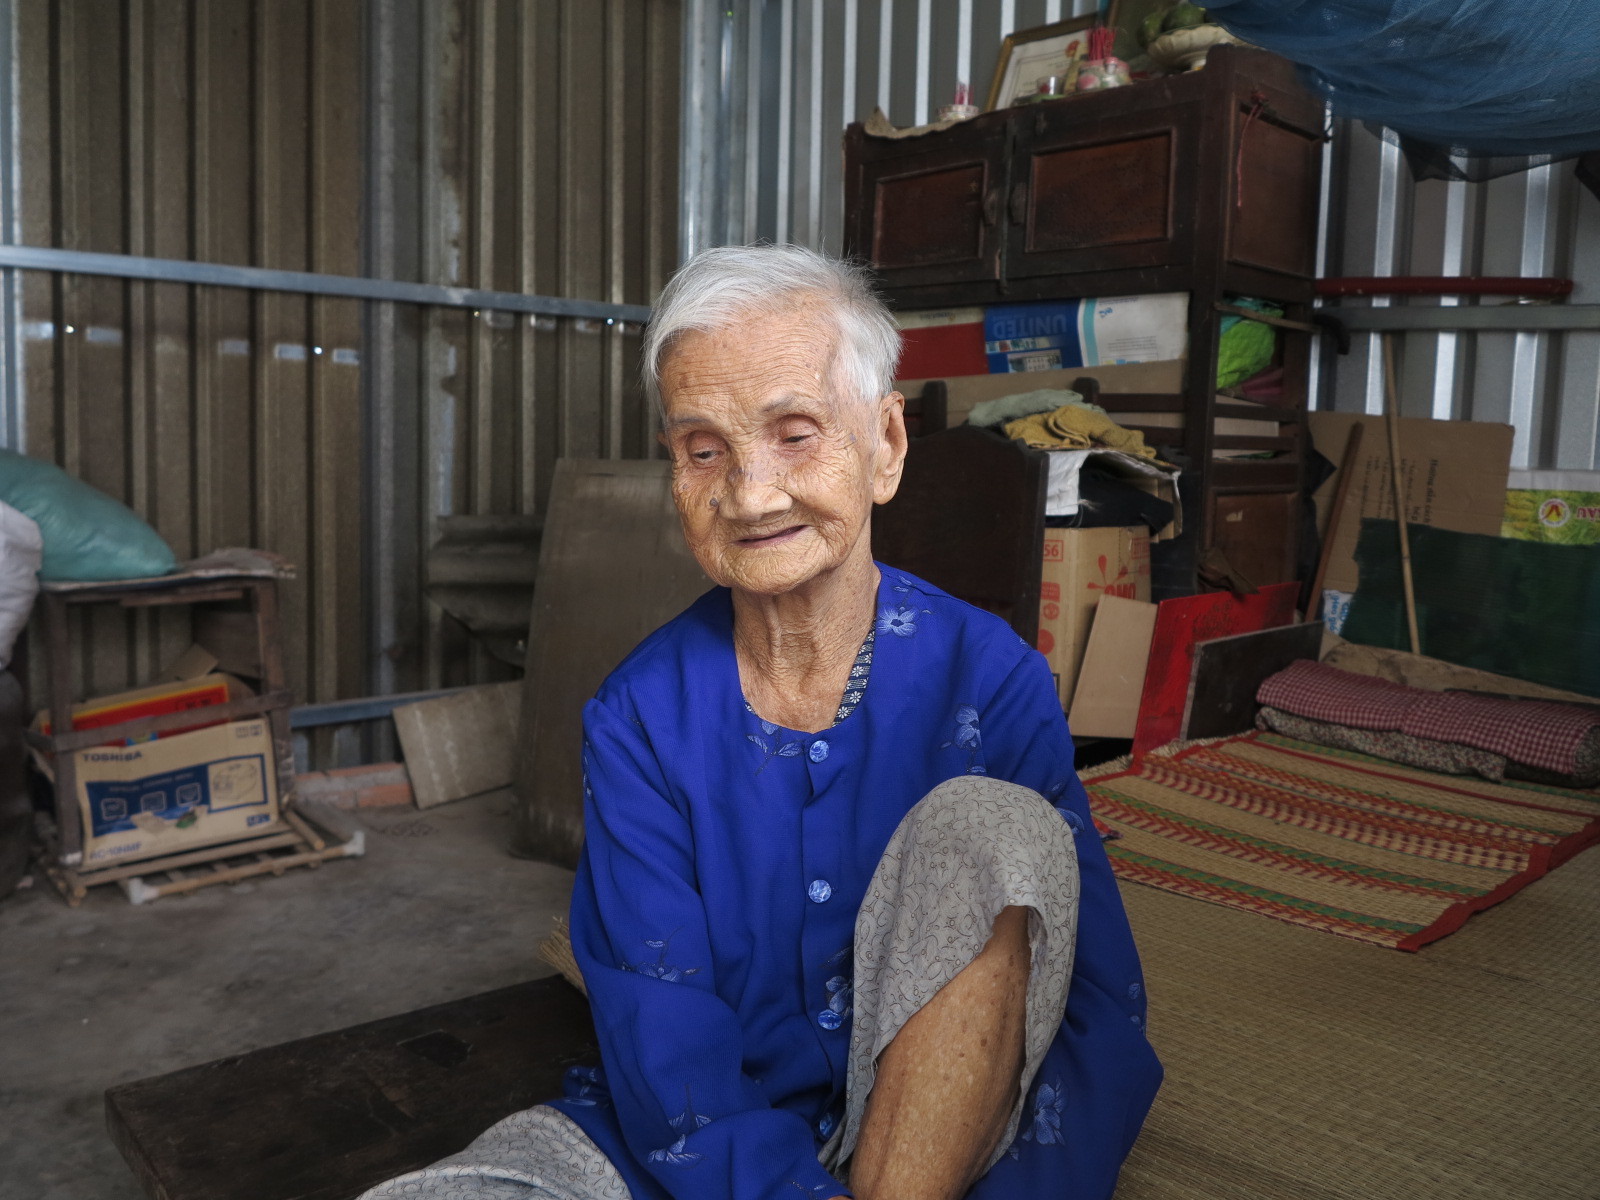 Bà lão Sài Gòn tuổi 84 mỏi mòn nơi góc vườn tìm con gái đi lạc